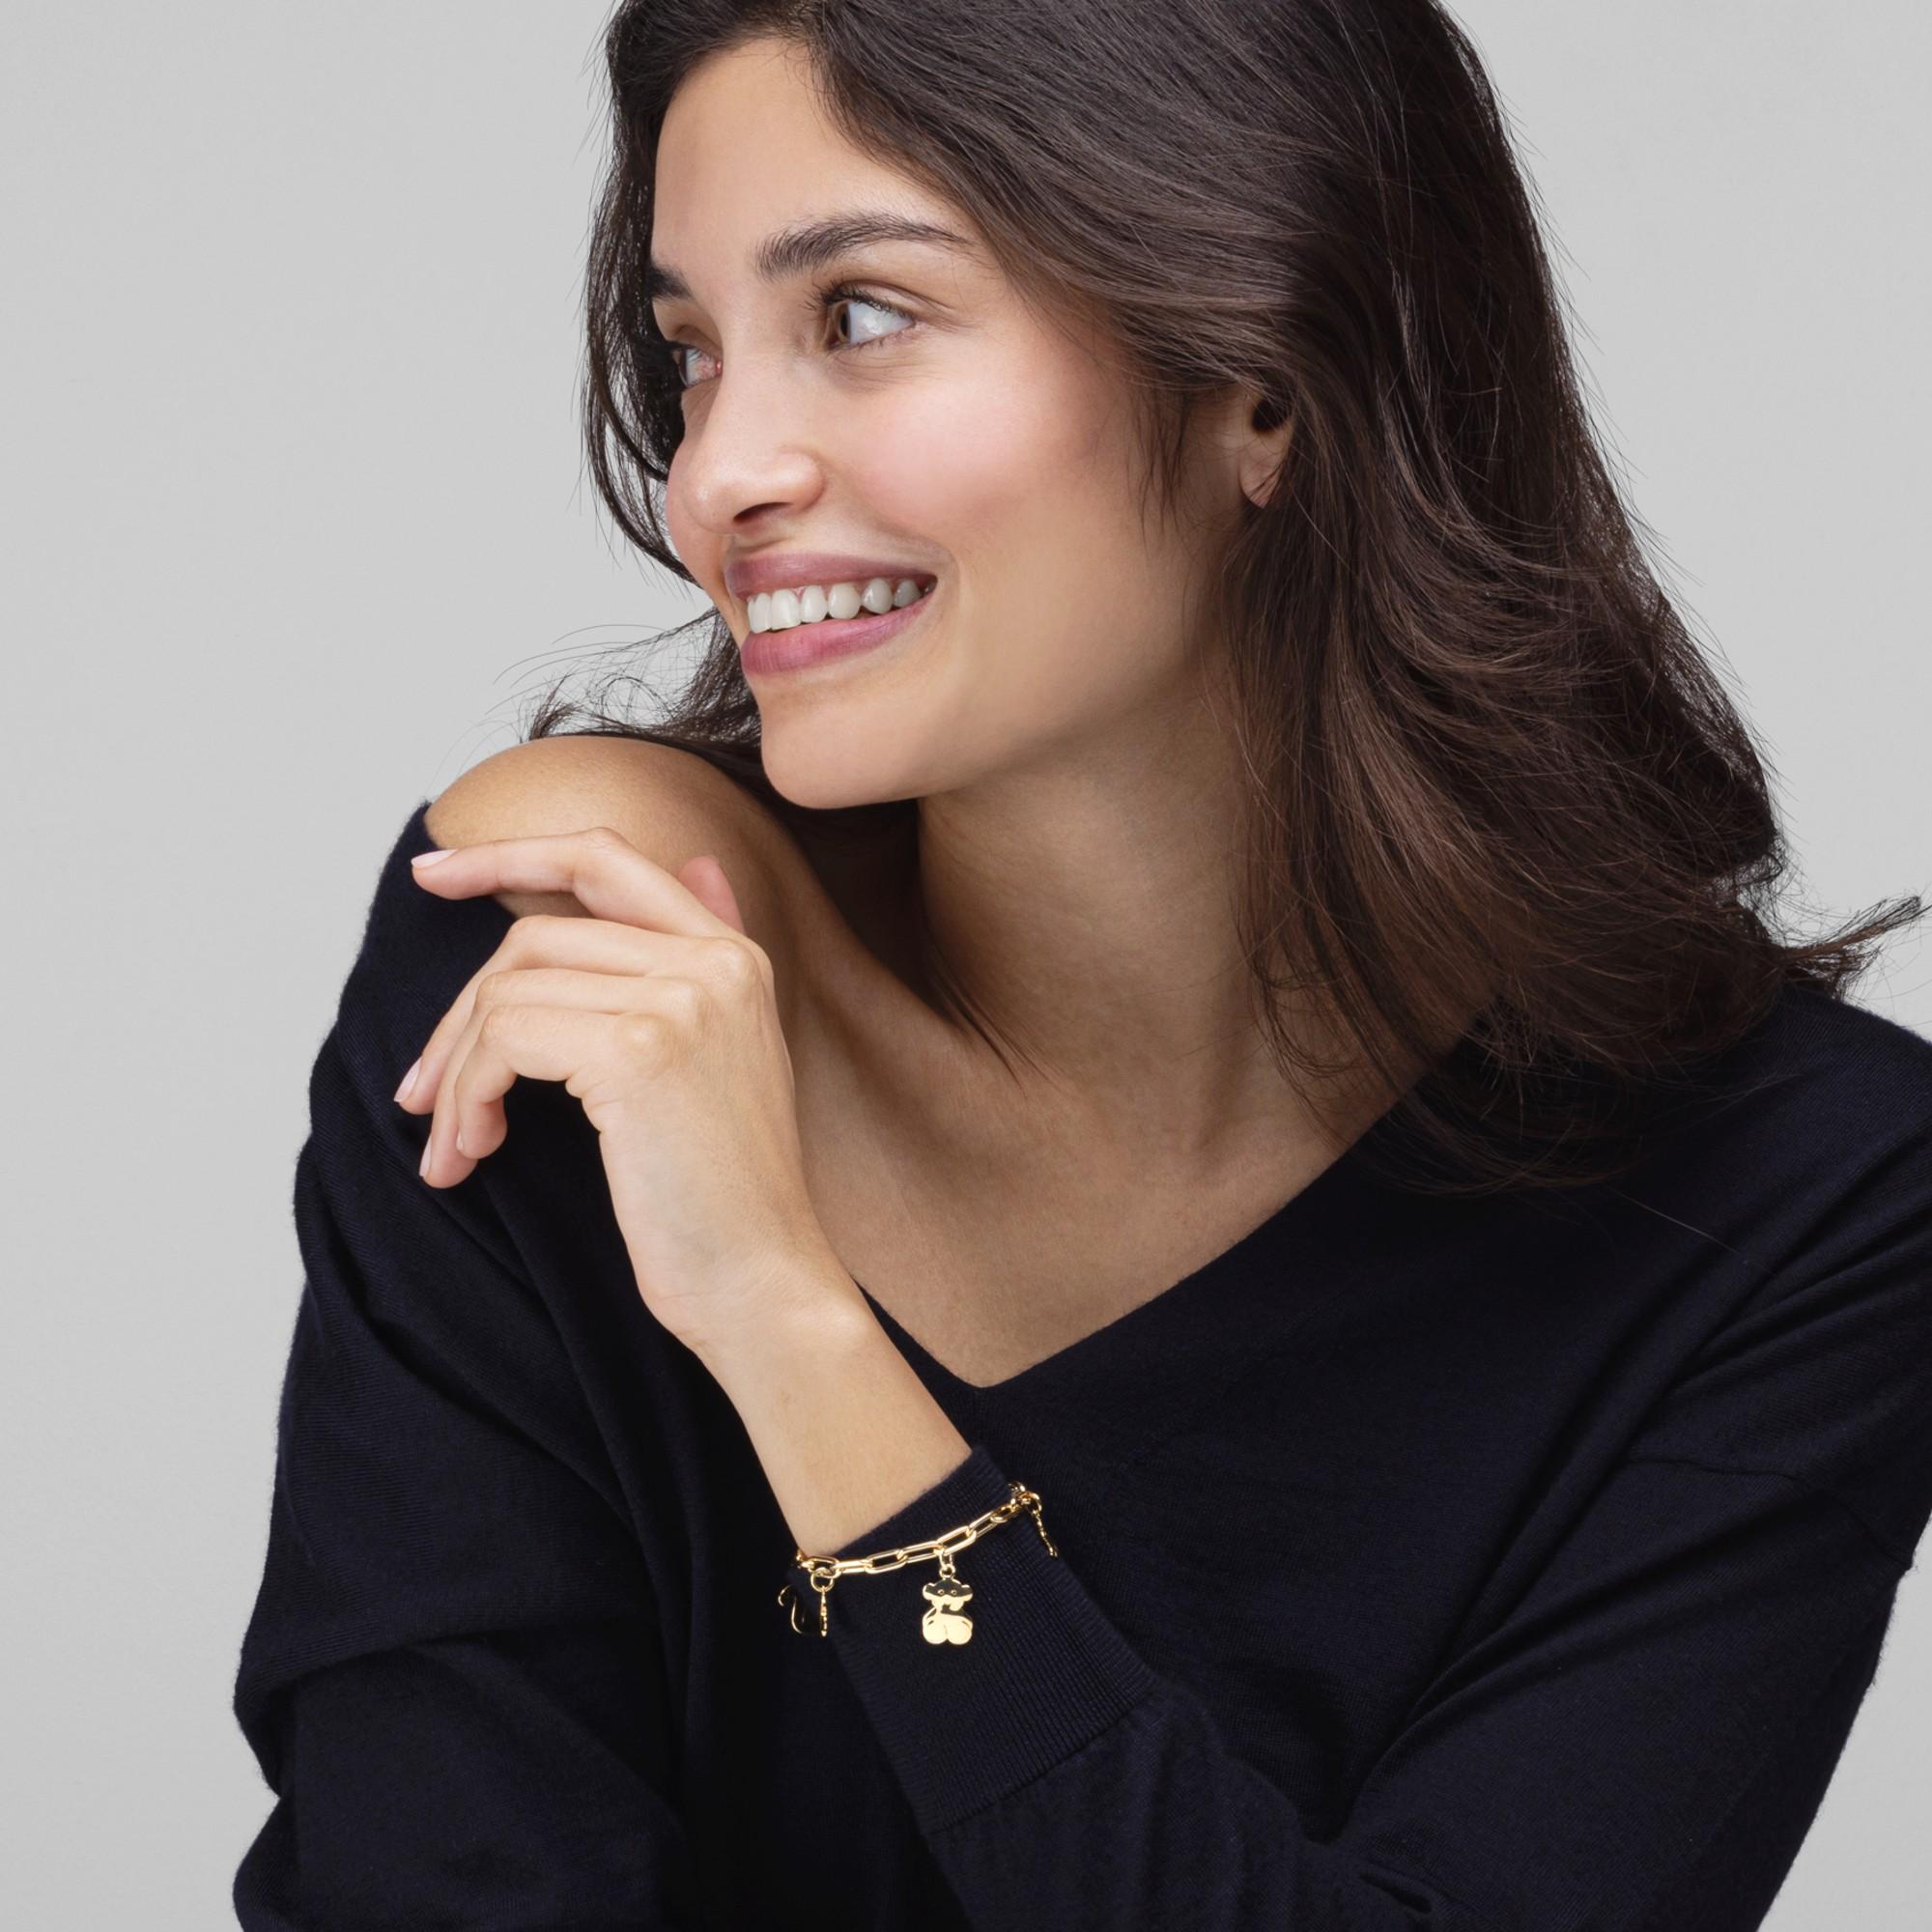 Alex Jona Design-Kollektion, handgefertigt in Italien, 18 Karat Gelbgold, Tier-Charme-Kettenarmband.

Die Juwelen von Alex Jona zeichnen sich nicht nur durch ihr besonderes Design und die hervorragende Qualität der Edelsteine aus, sondern auch durch